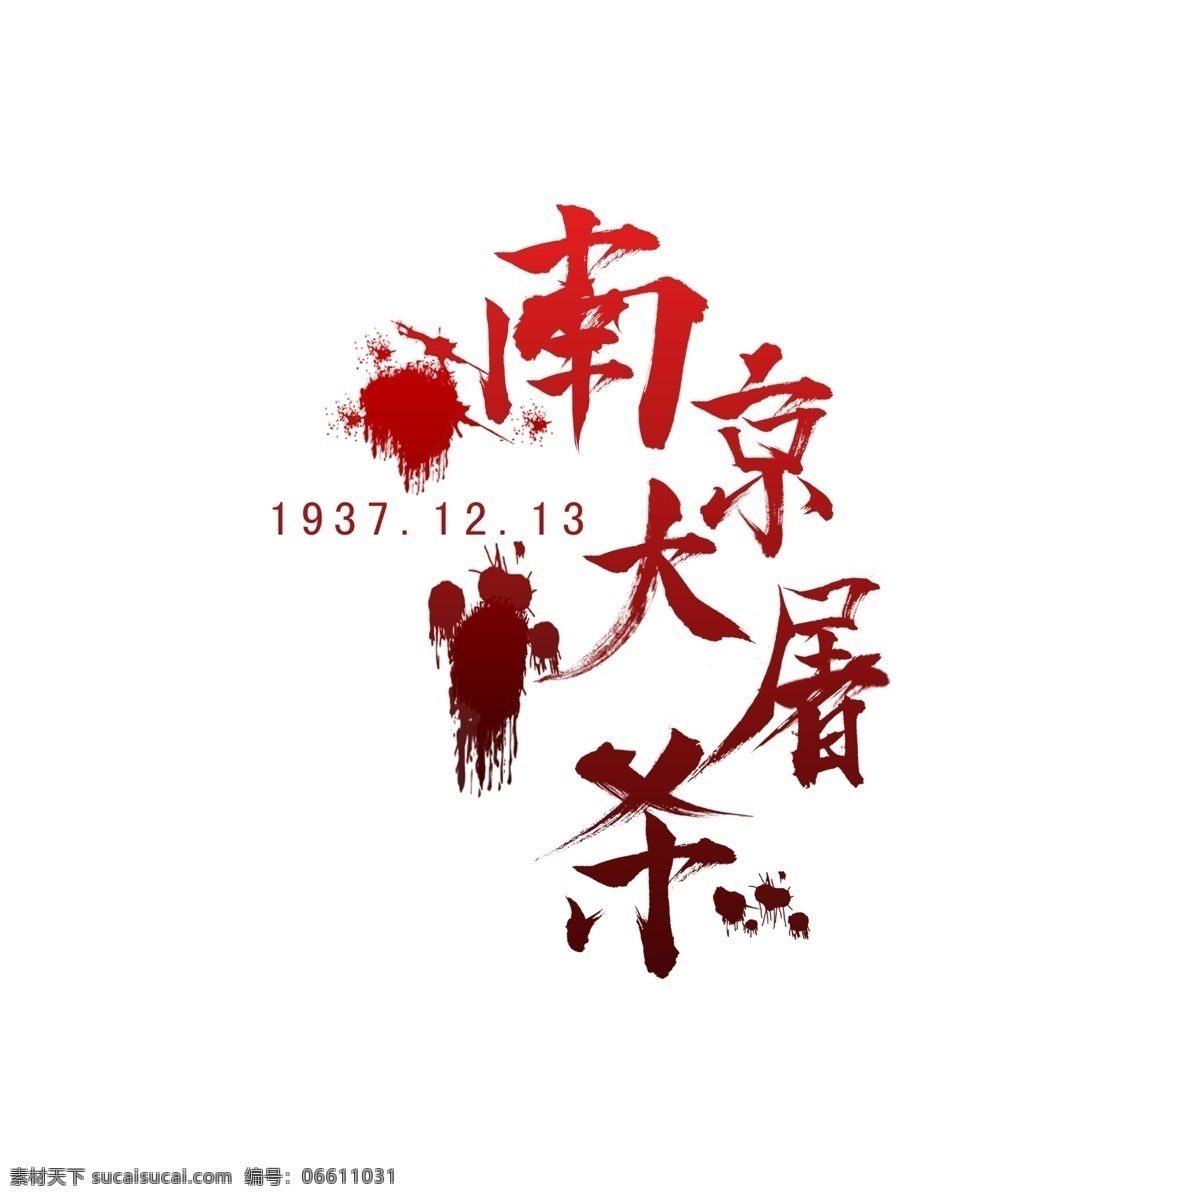 南京大屠杀 红色 水墨 书法 字 书法字 红色渐变 血滴